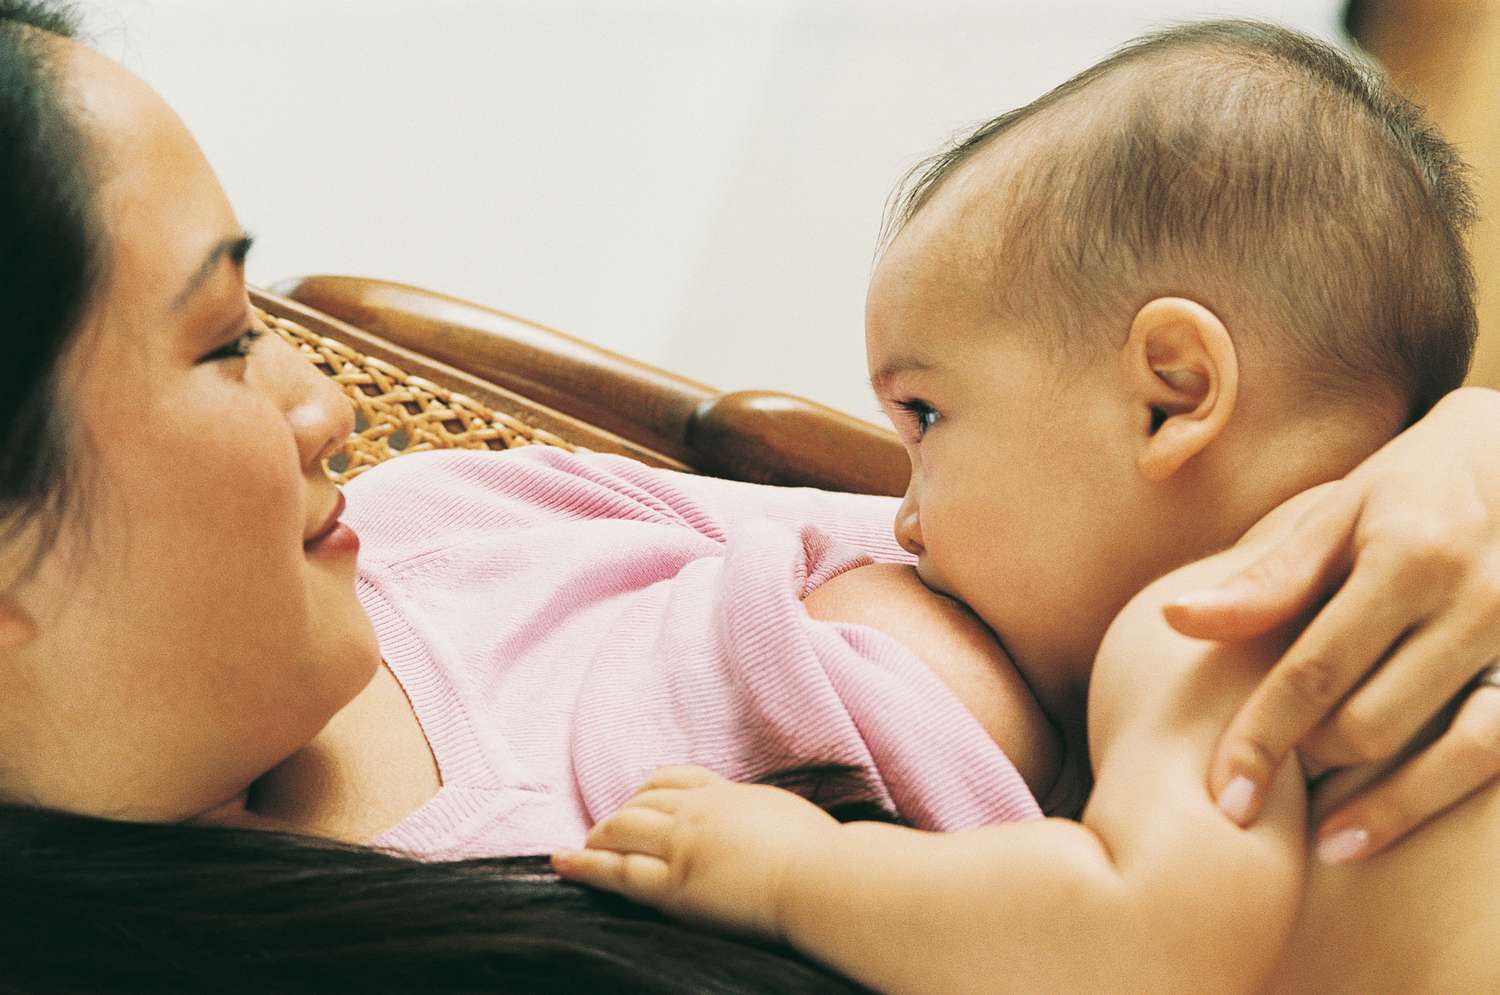 andre sannes share mom breastfeeding grown son photos